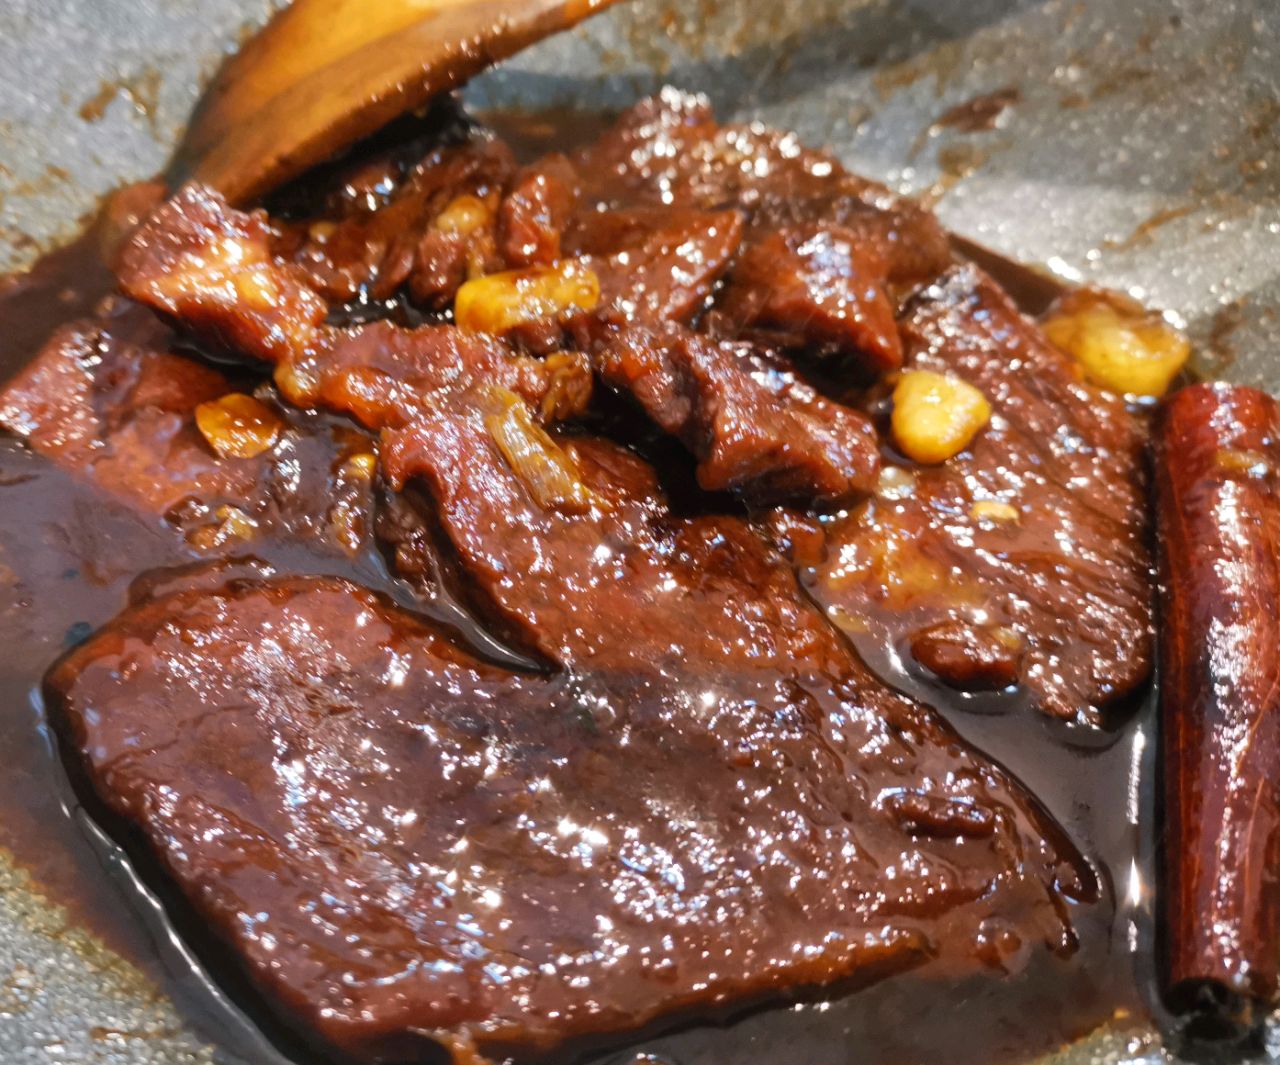 乌拉圭310安格斯谷饲眼肉盖翼板肉上脑边牛小排雪花奶香烤肉食材-阿里巴巴